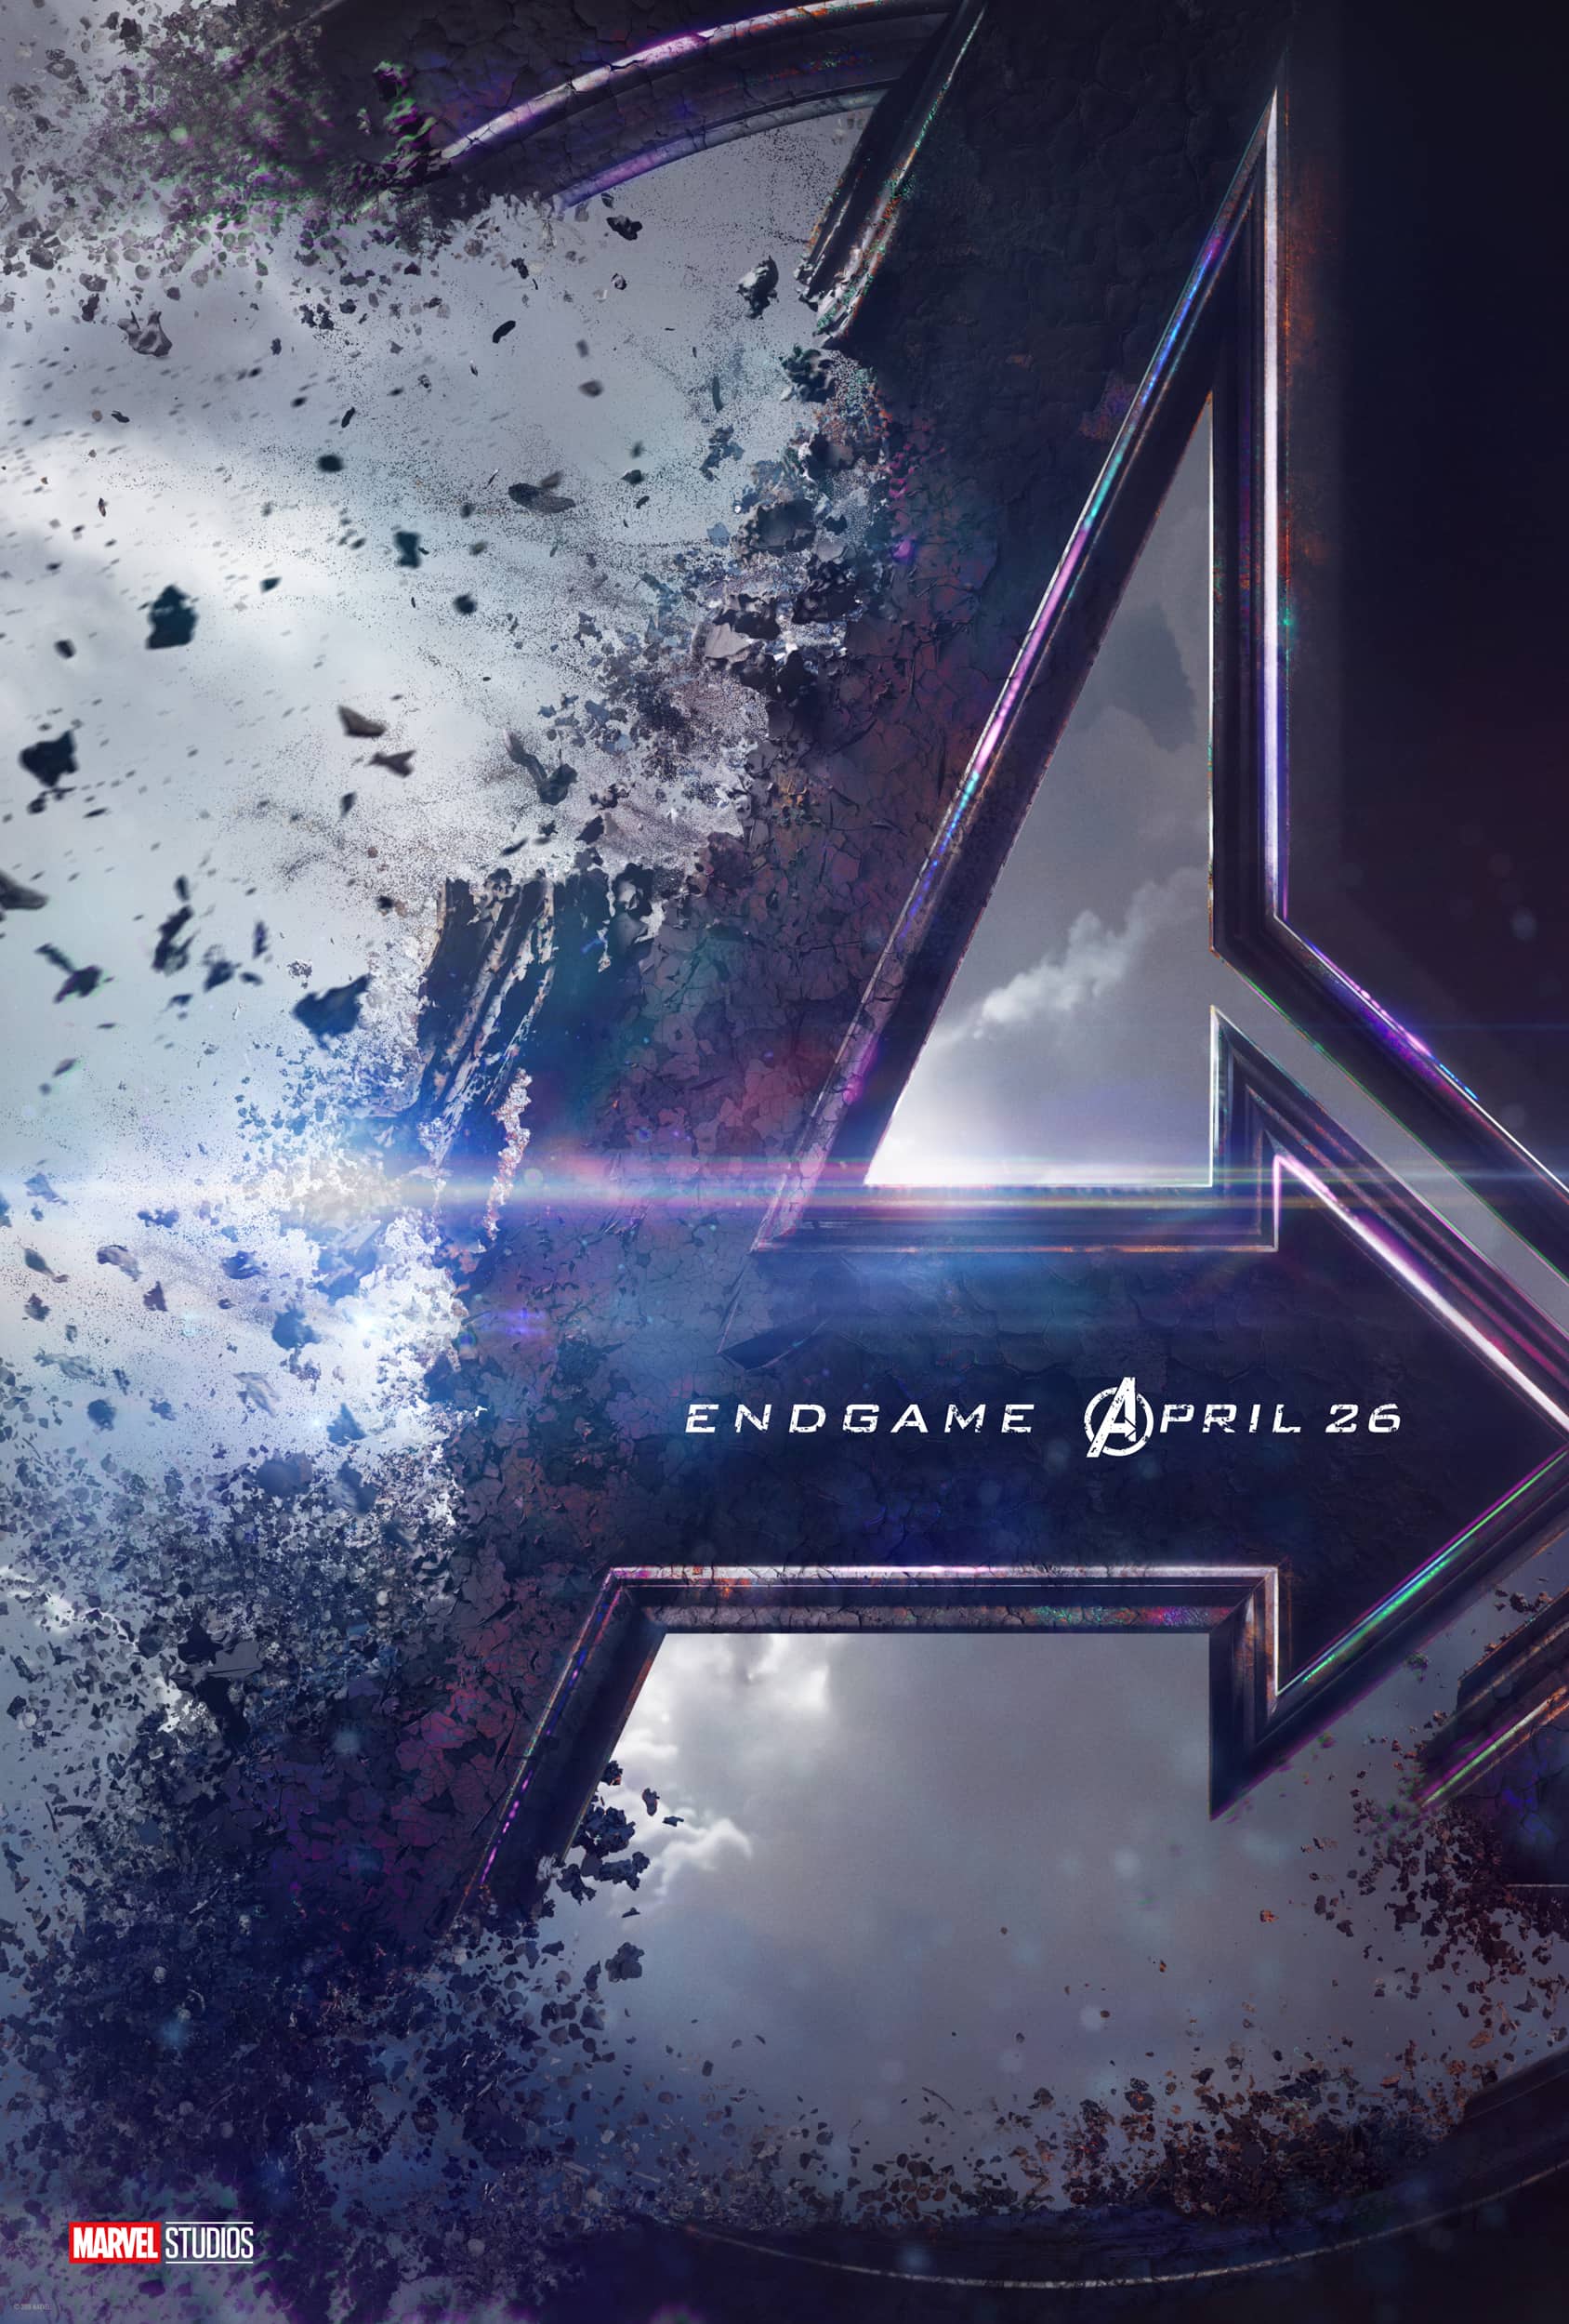 Avengers End Game Trailer Breakdown